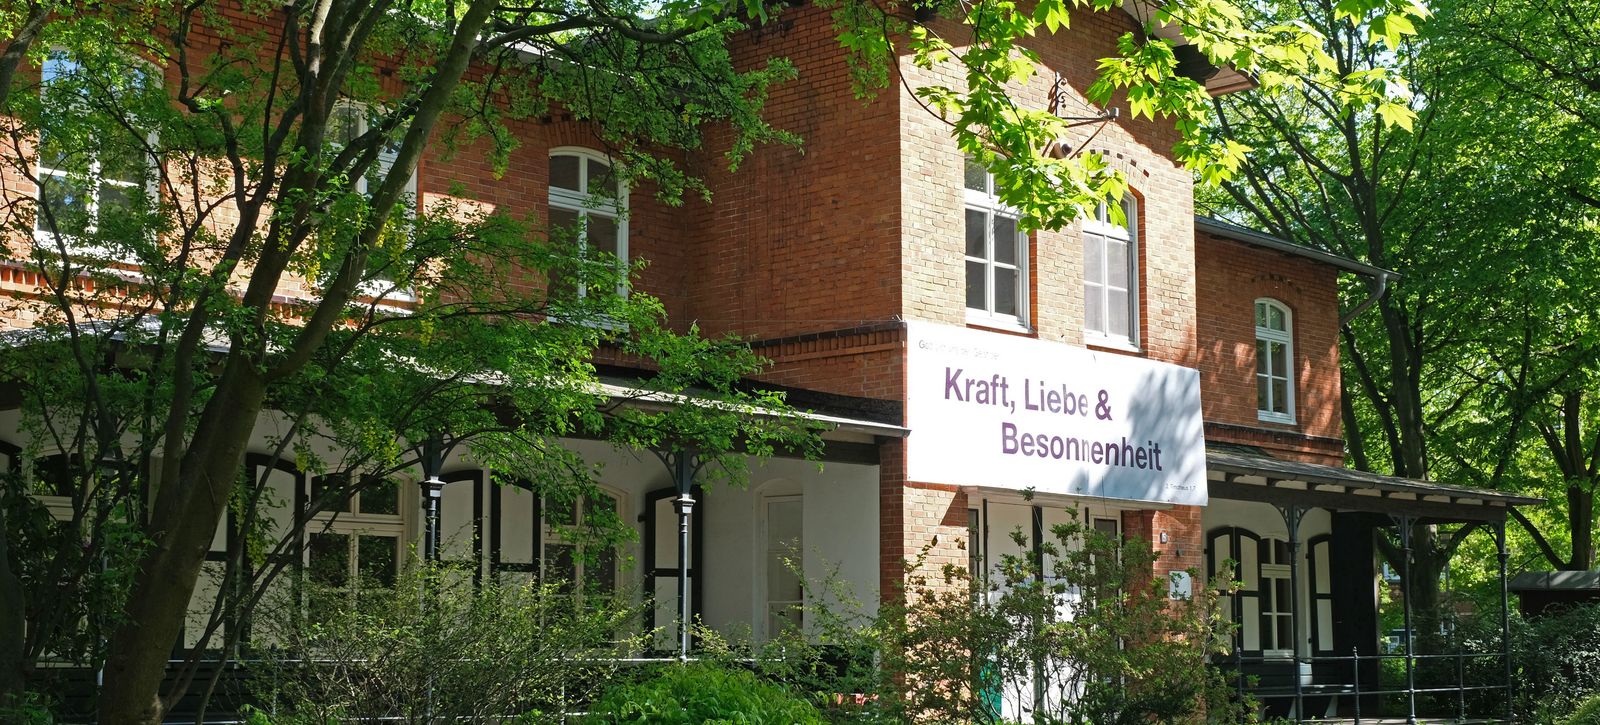 Haus Anker auf dem Stiftungsgelände mit Banner an der Hauswand "Kraft, Liebe & Besonnenheit"